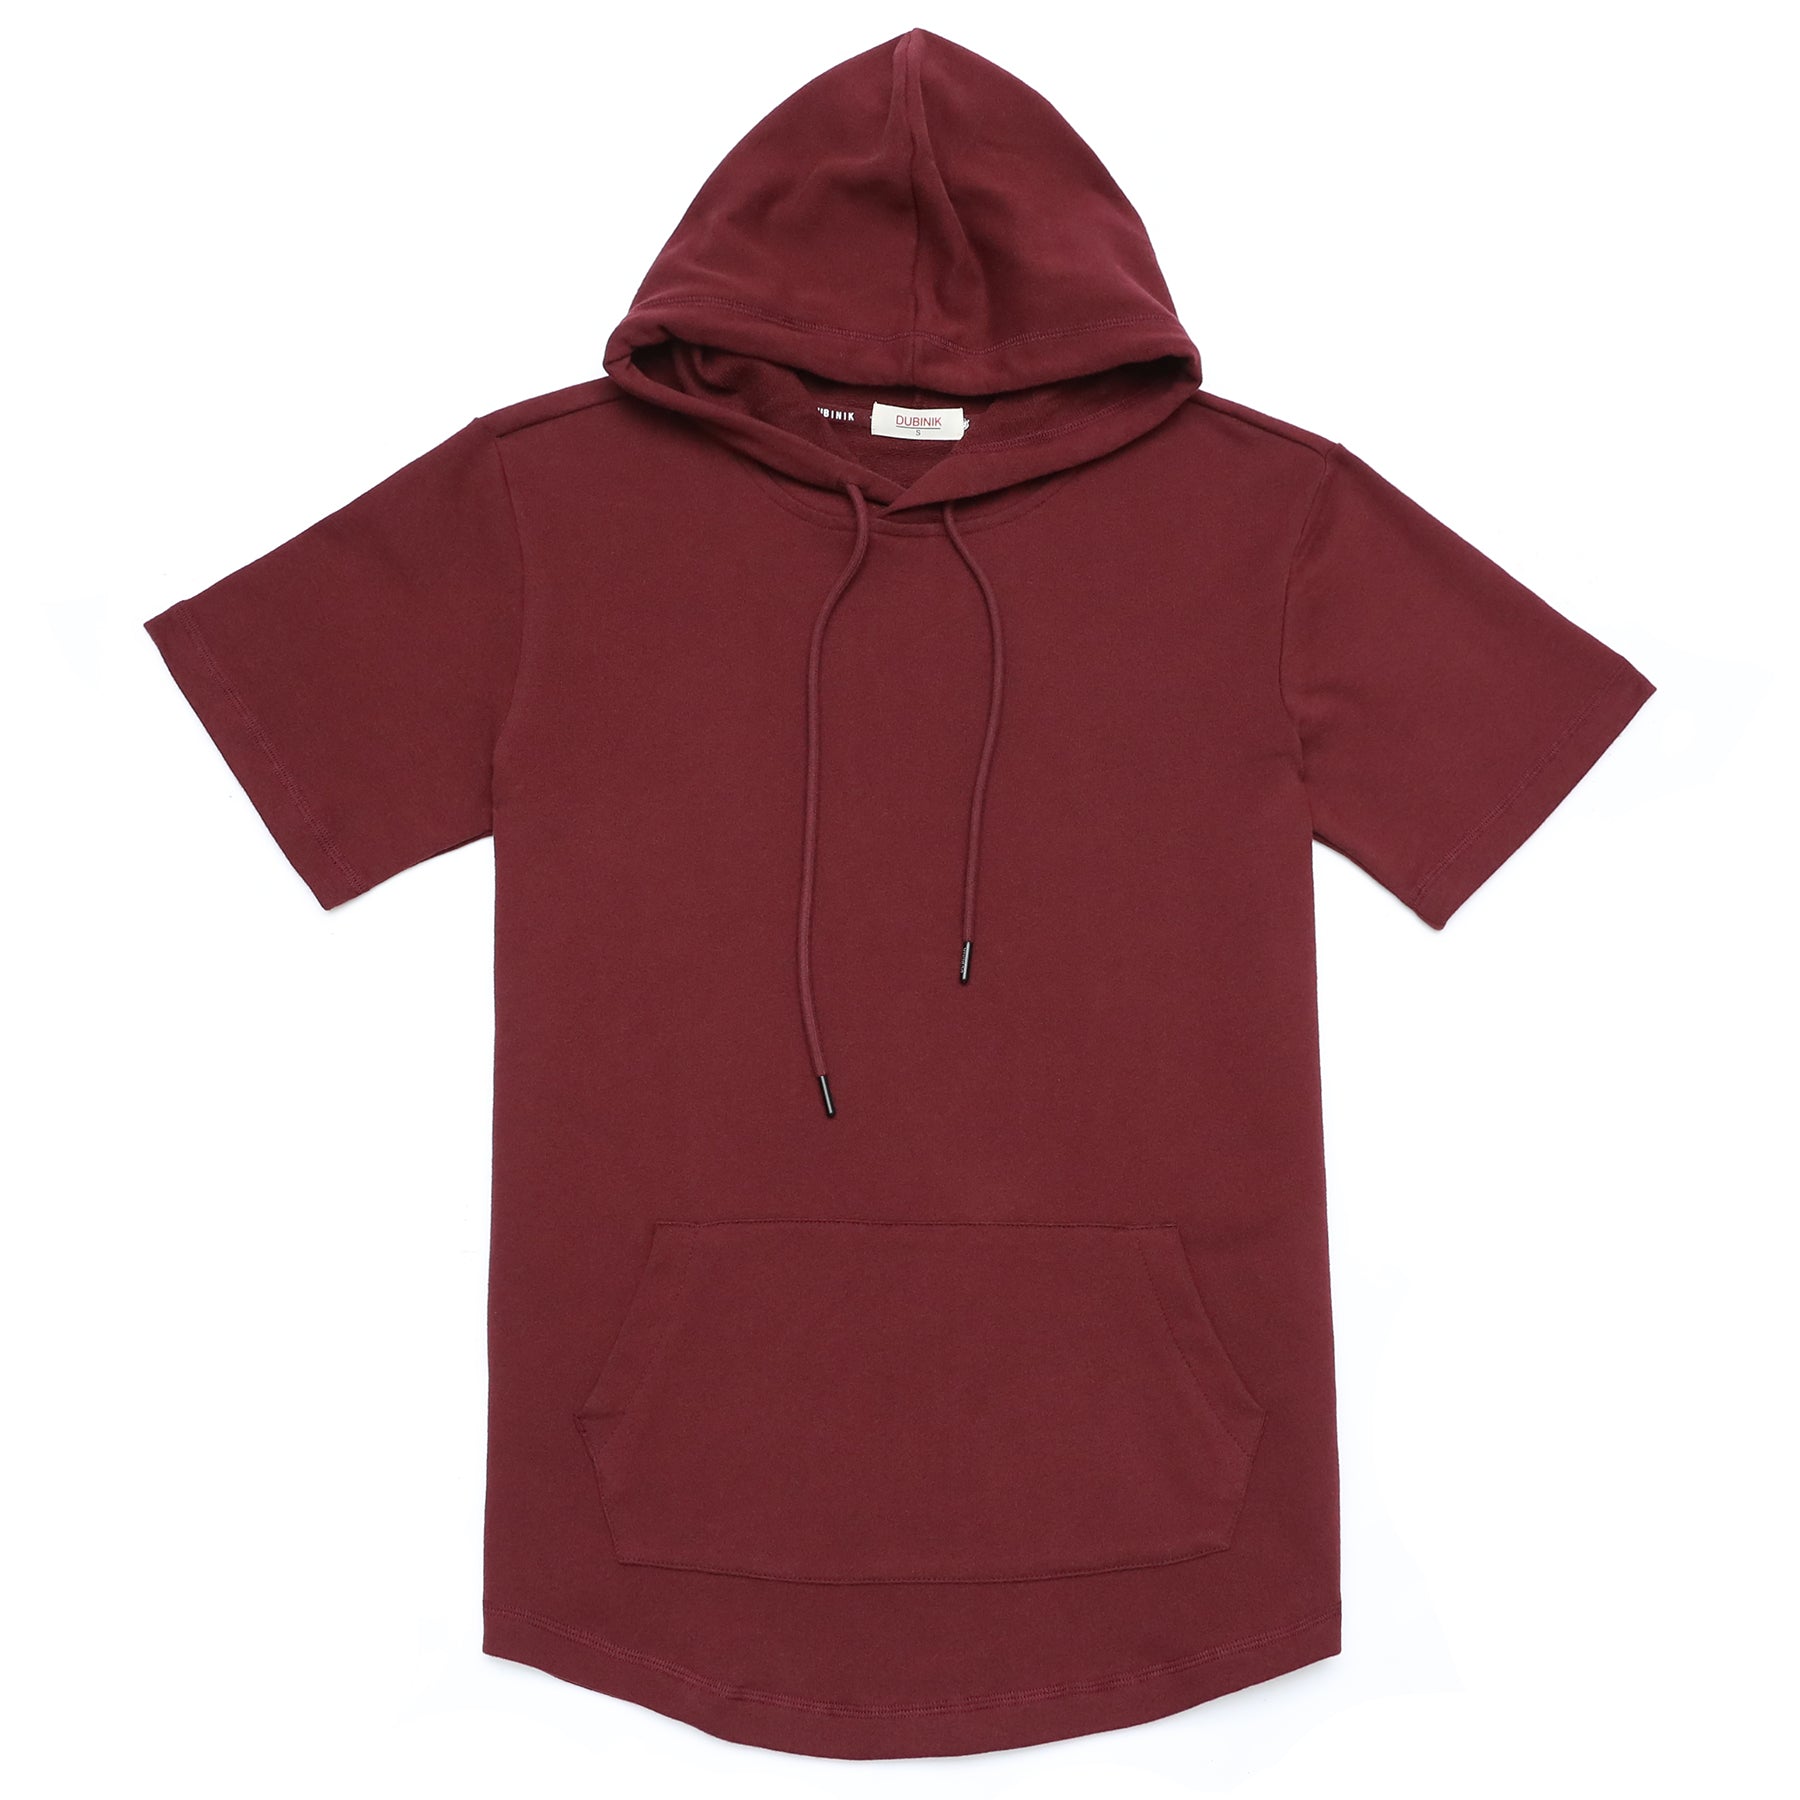 Men's Hoodies short-sleeved hooded sweatshirt #0617